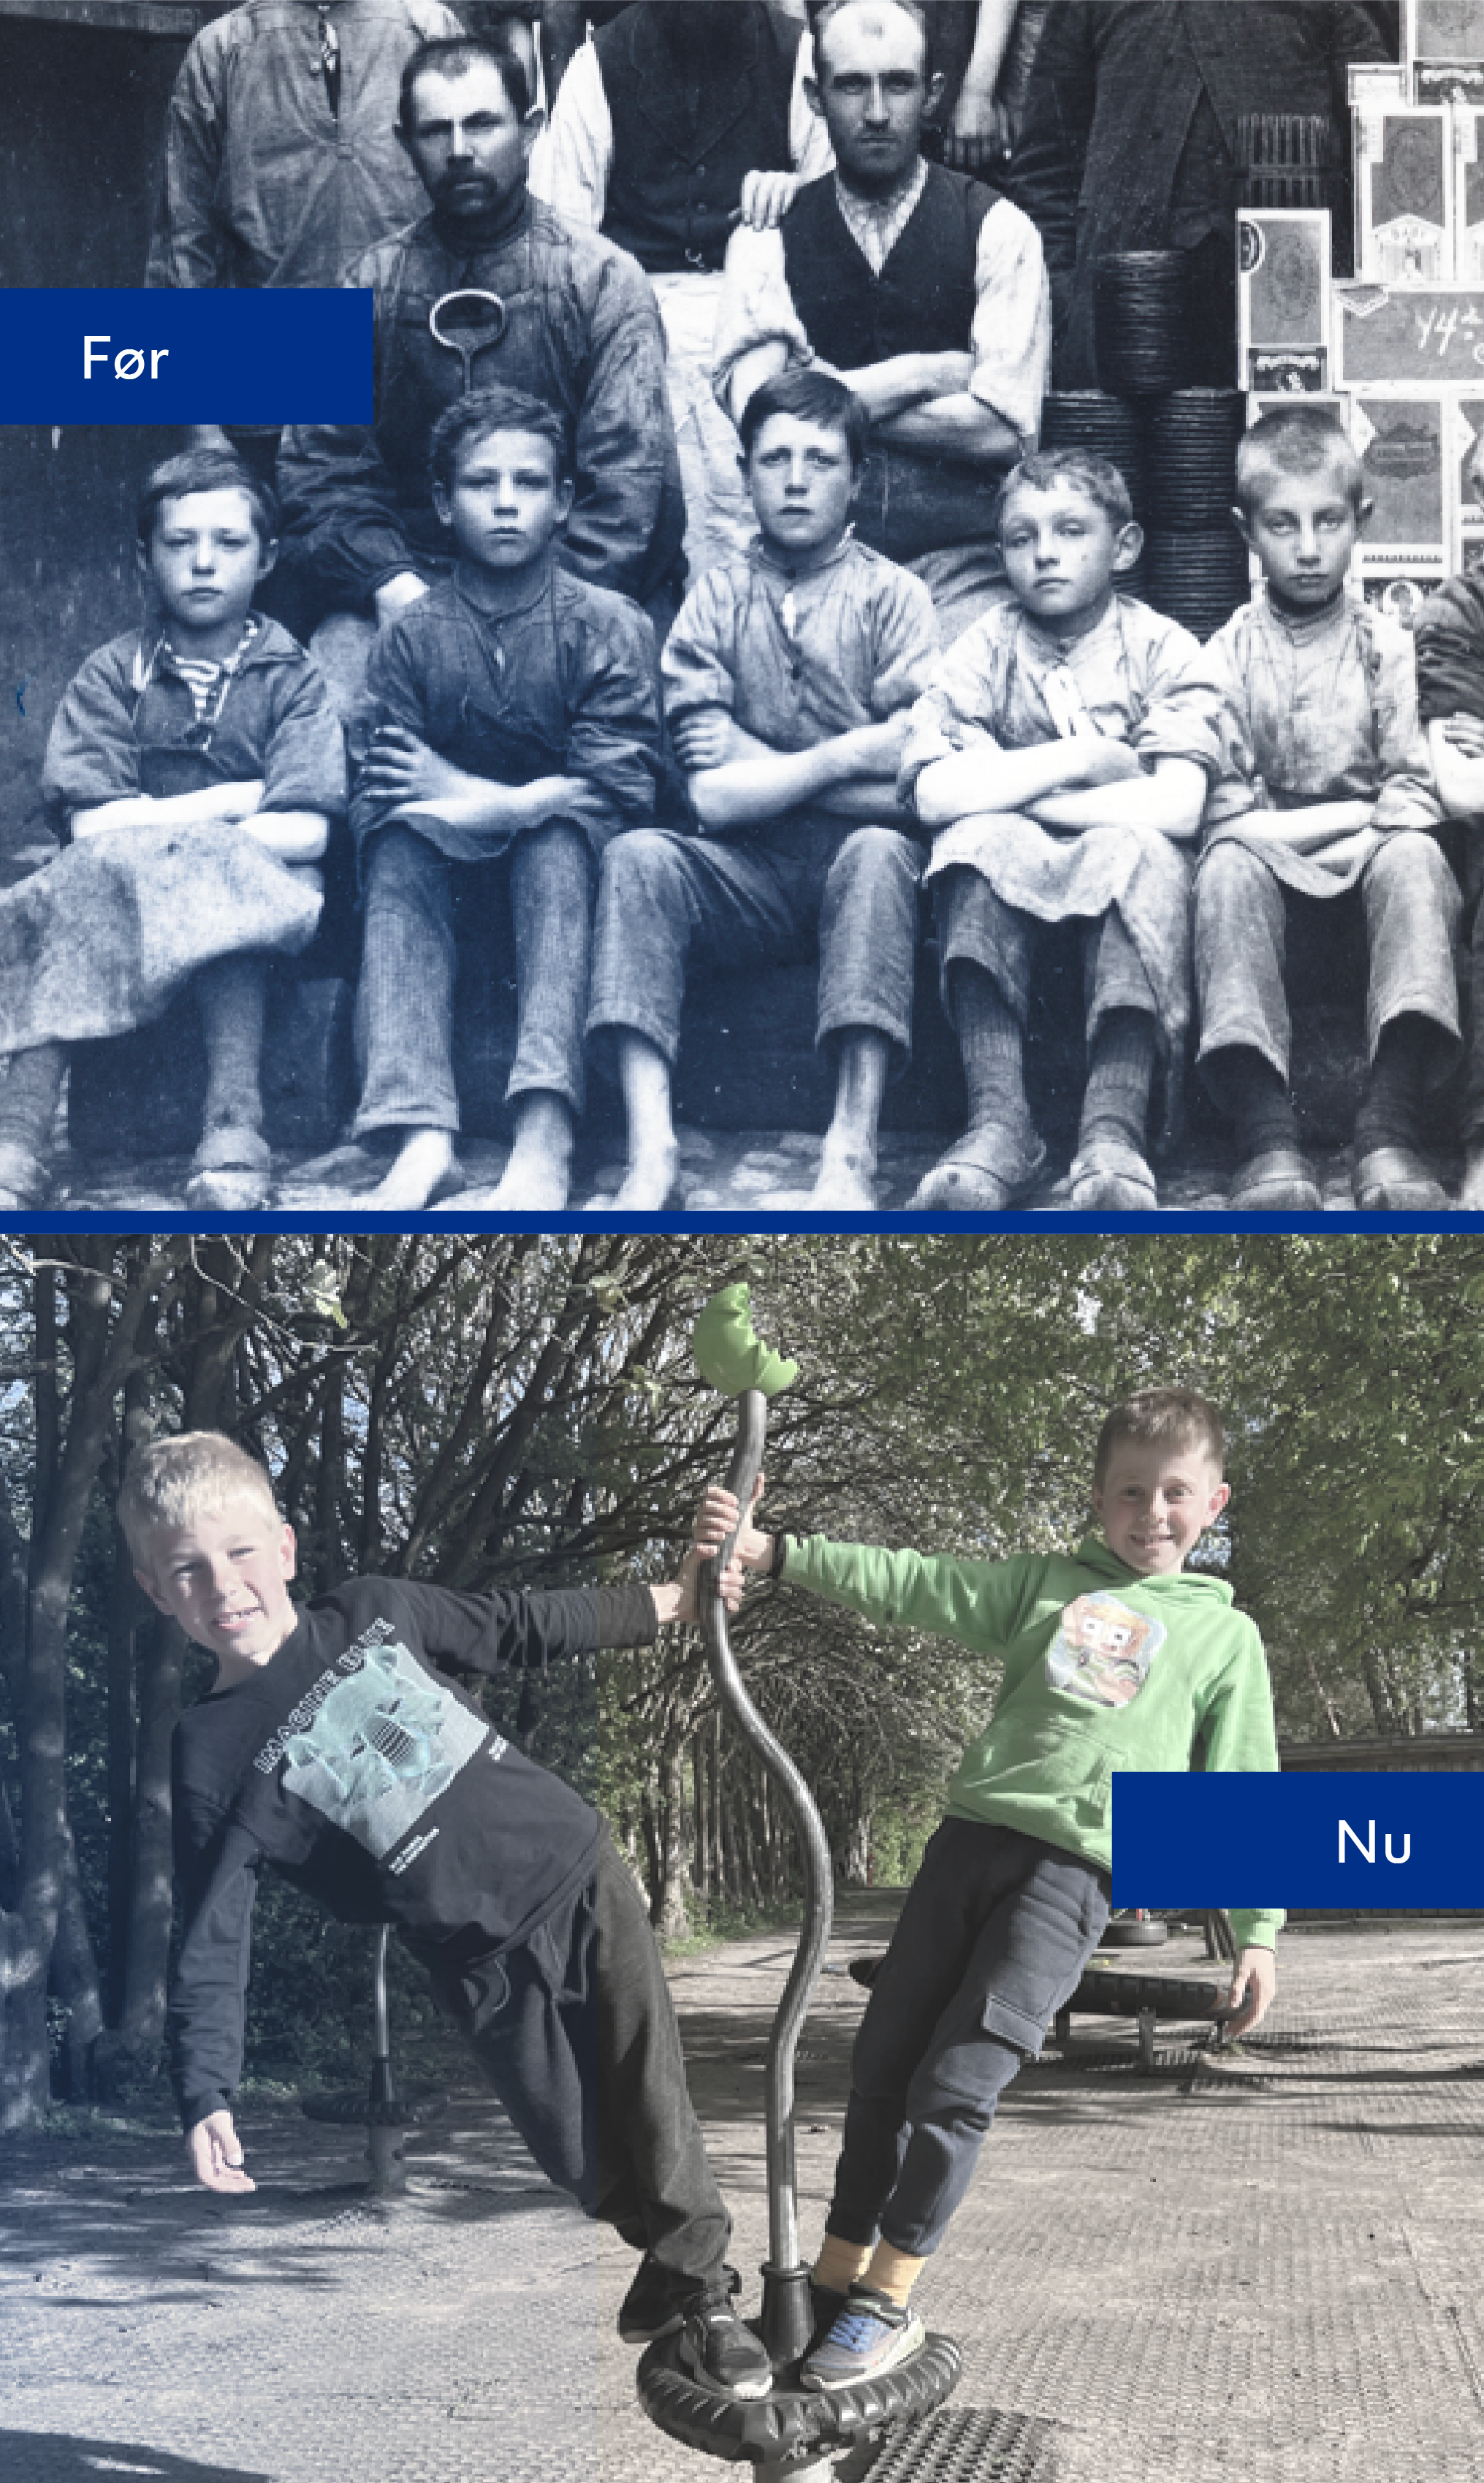 Før og efter billede. Før billedet viser en gruppe børn der har arbejdet på en fabrik i 1800-tallet. Nu billedet viser to drenge på en legeplads.